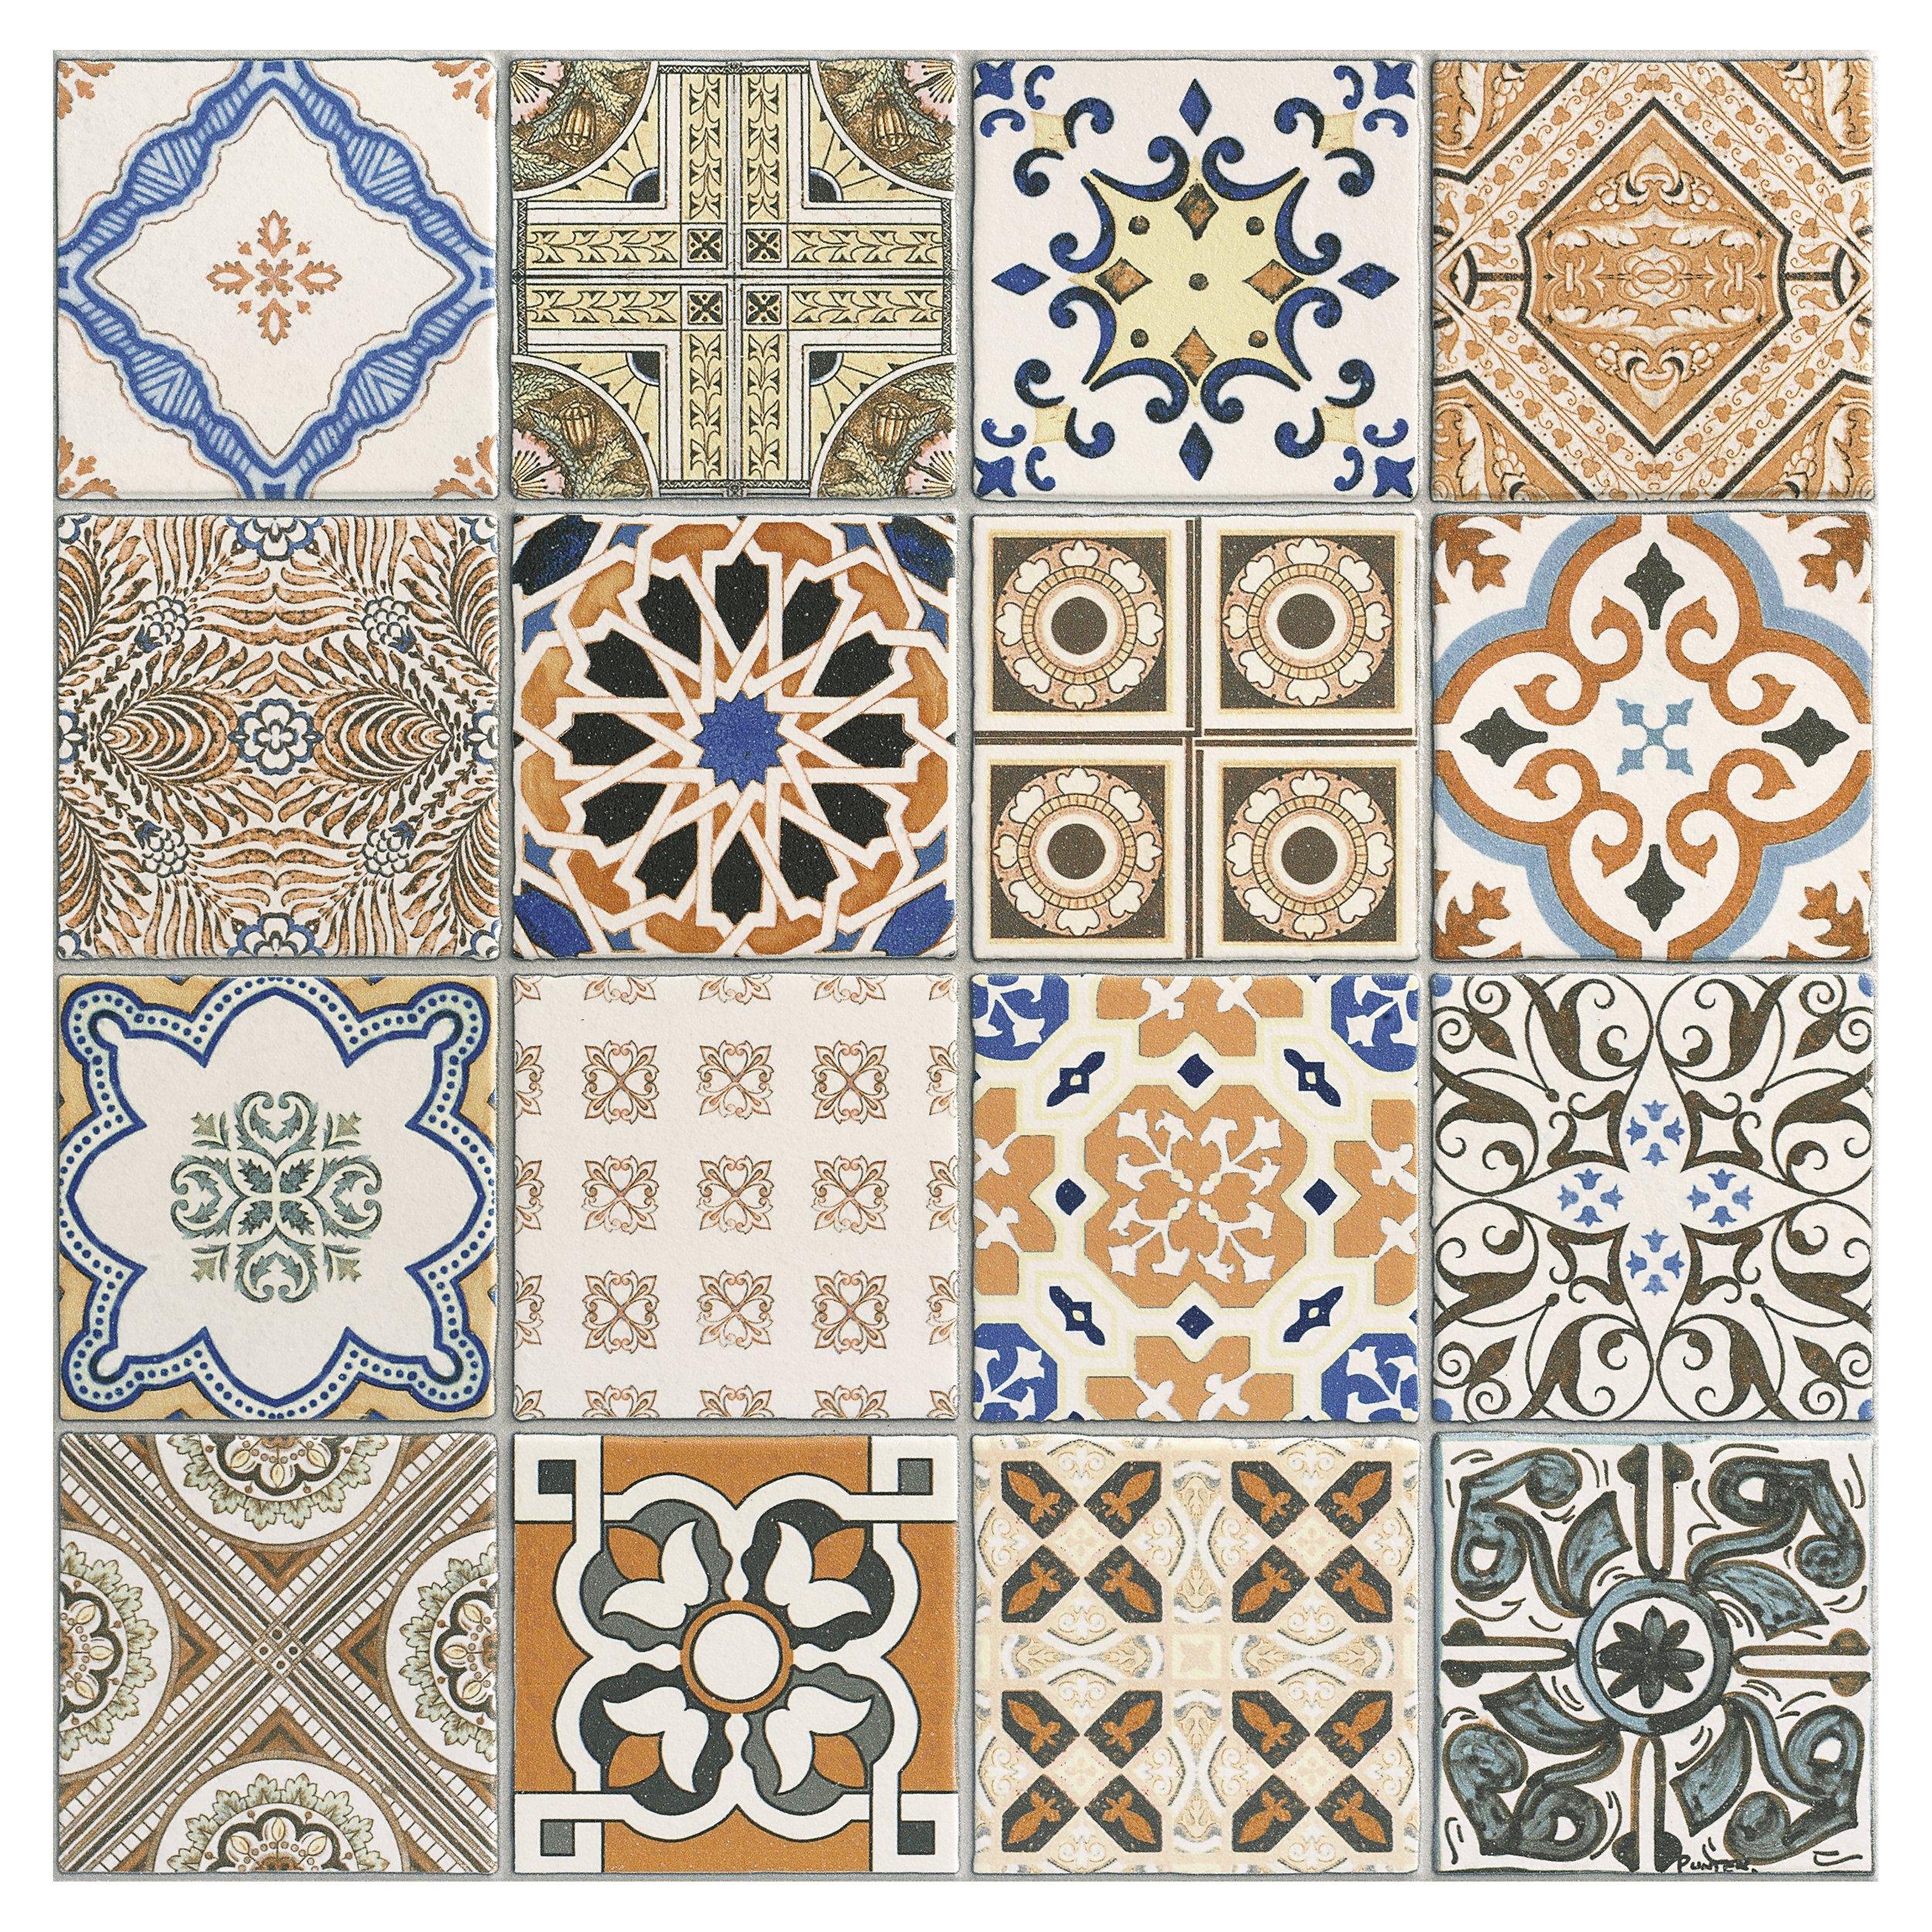 Provenzia Decorative Mix Pattern Porcelain Tile